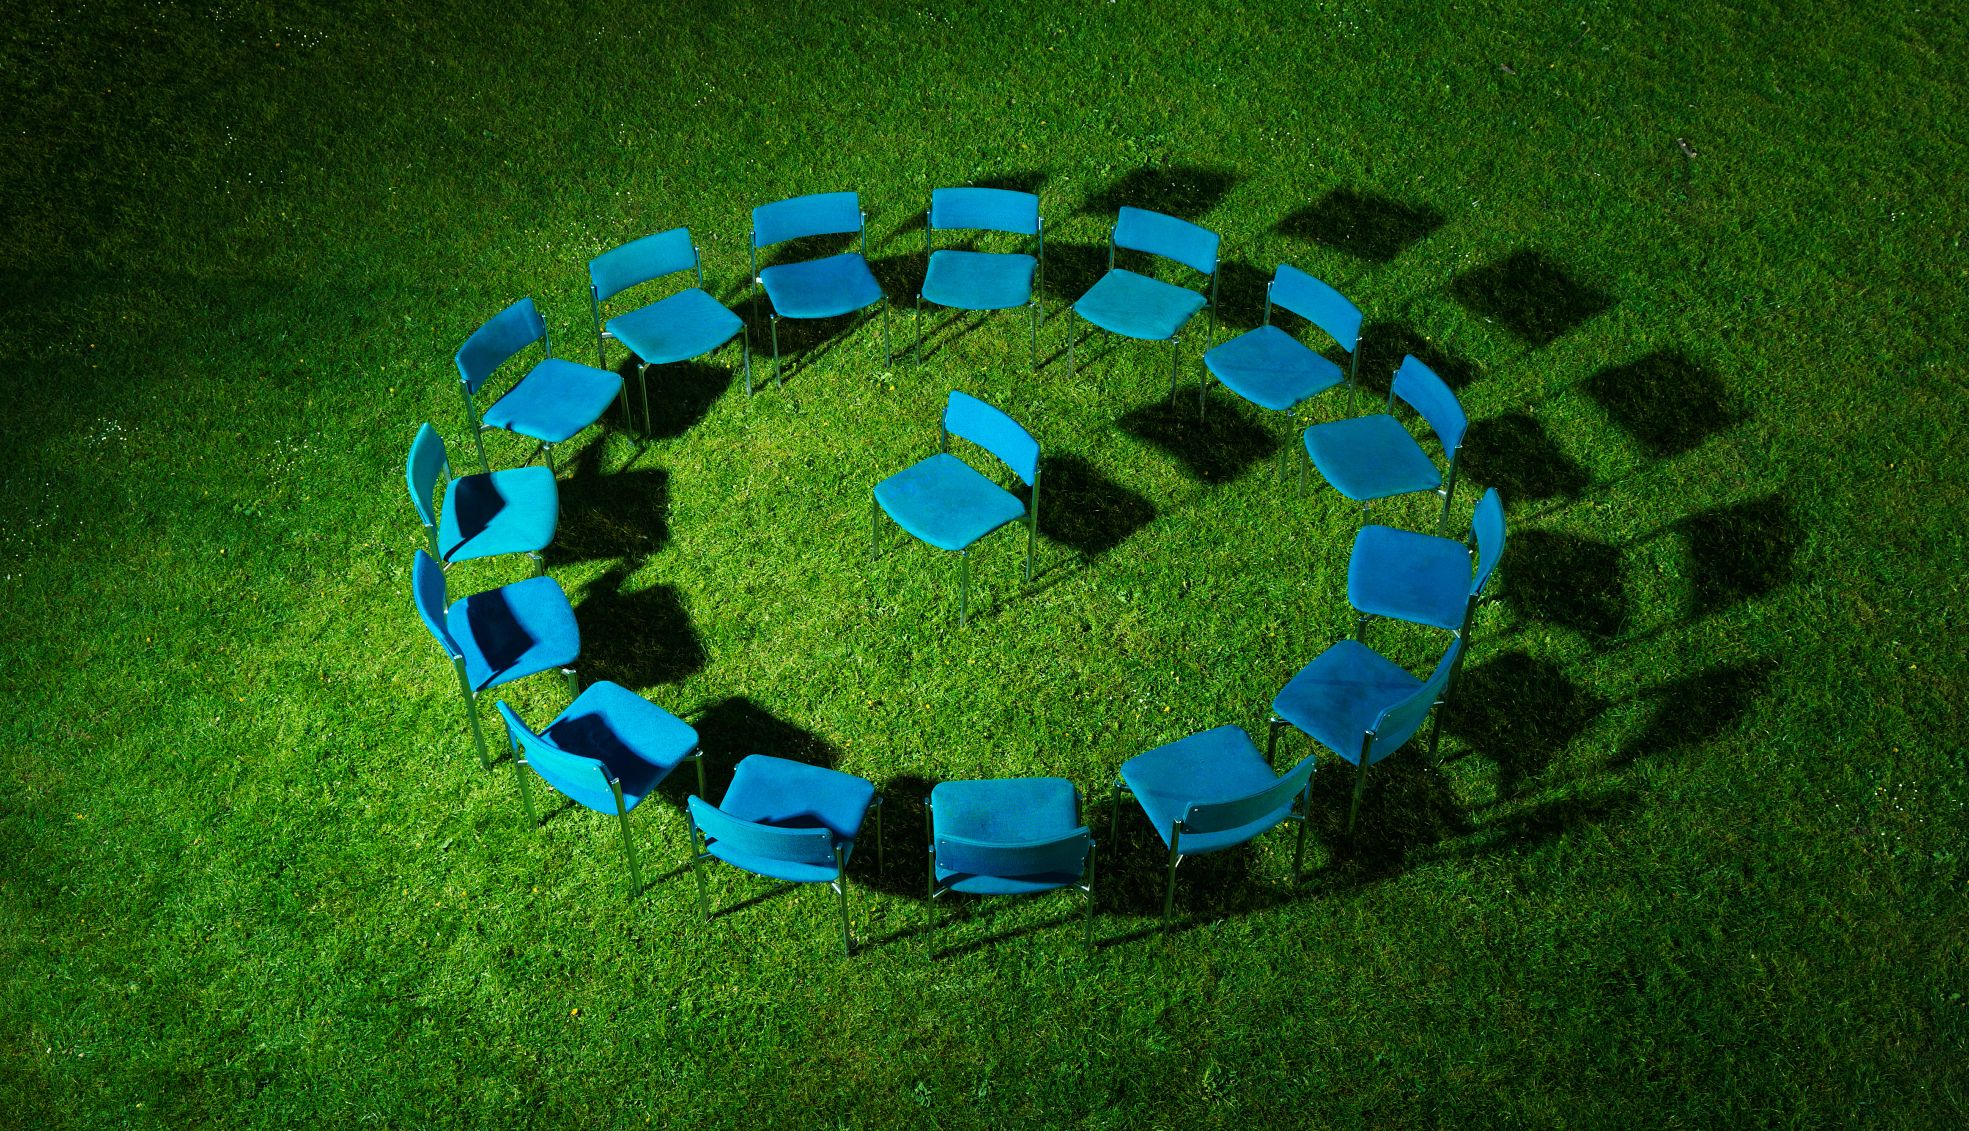 Círculo de sillas azules sobre césped verde con una silla en el centro